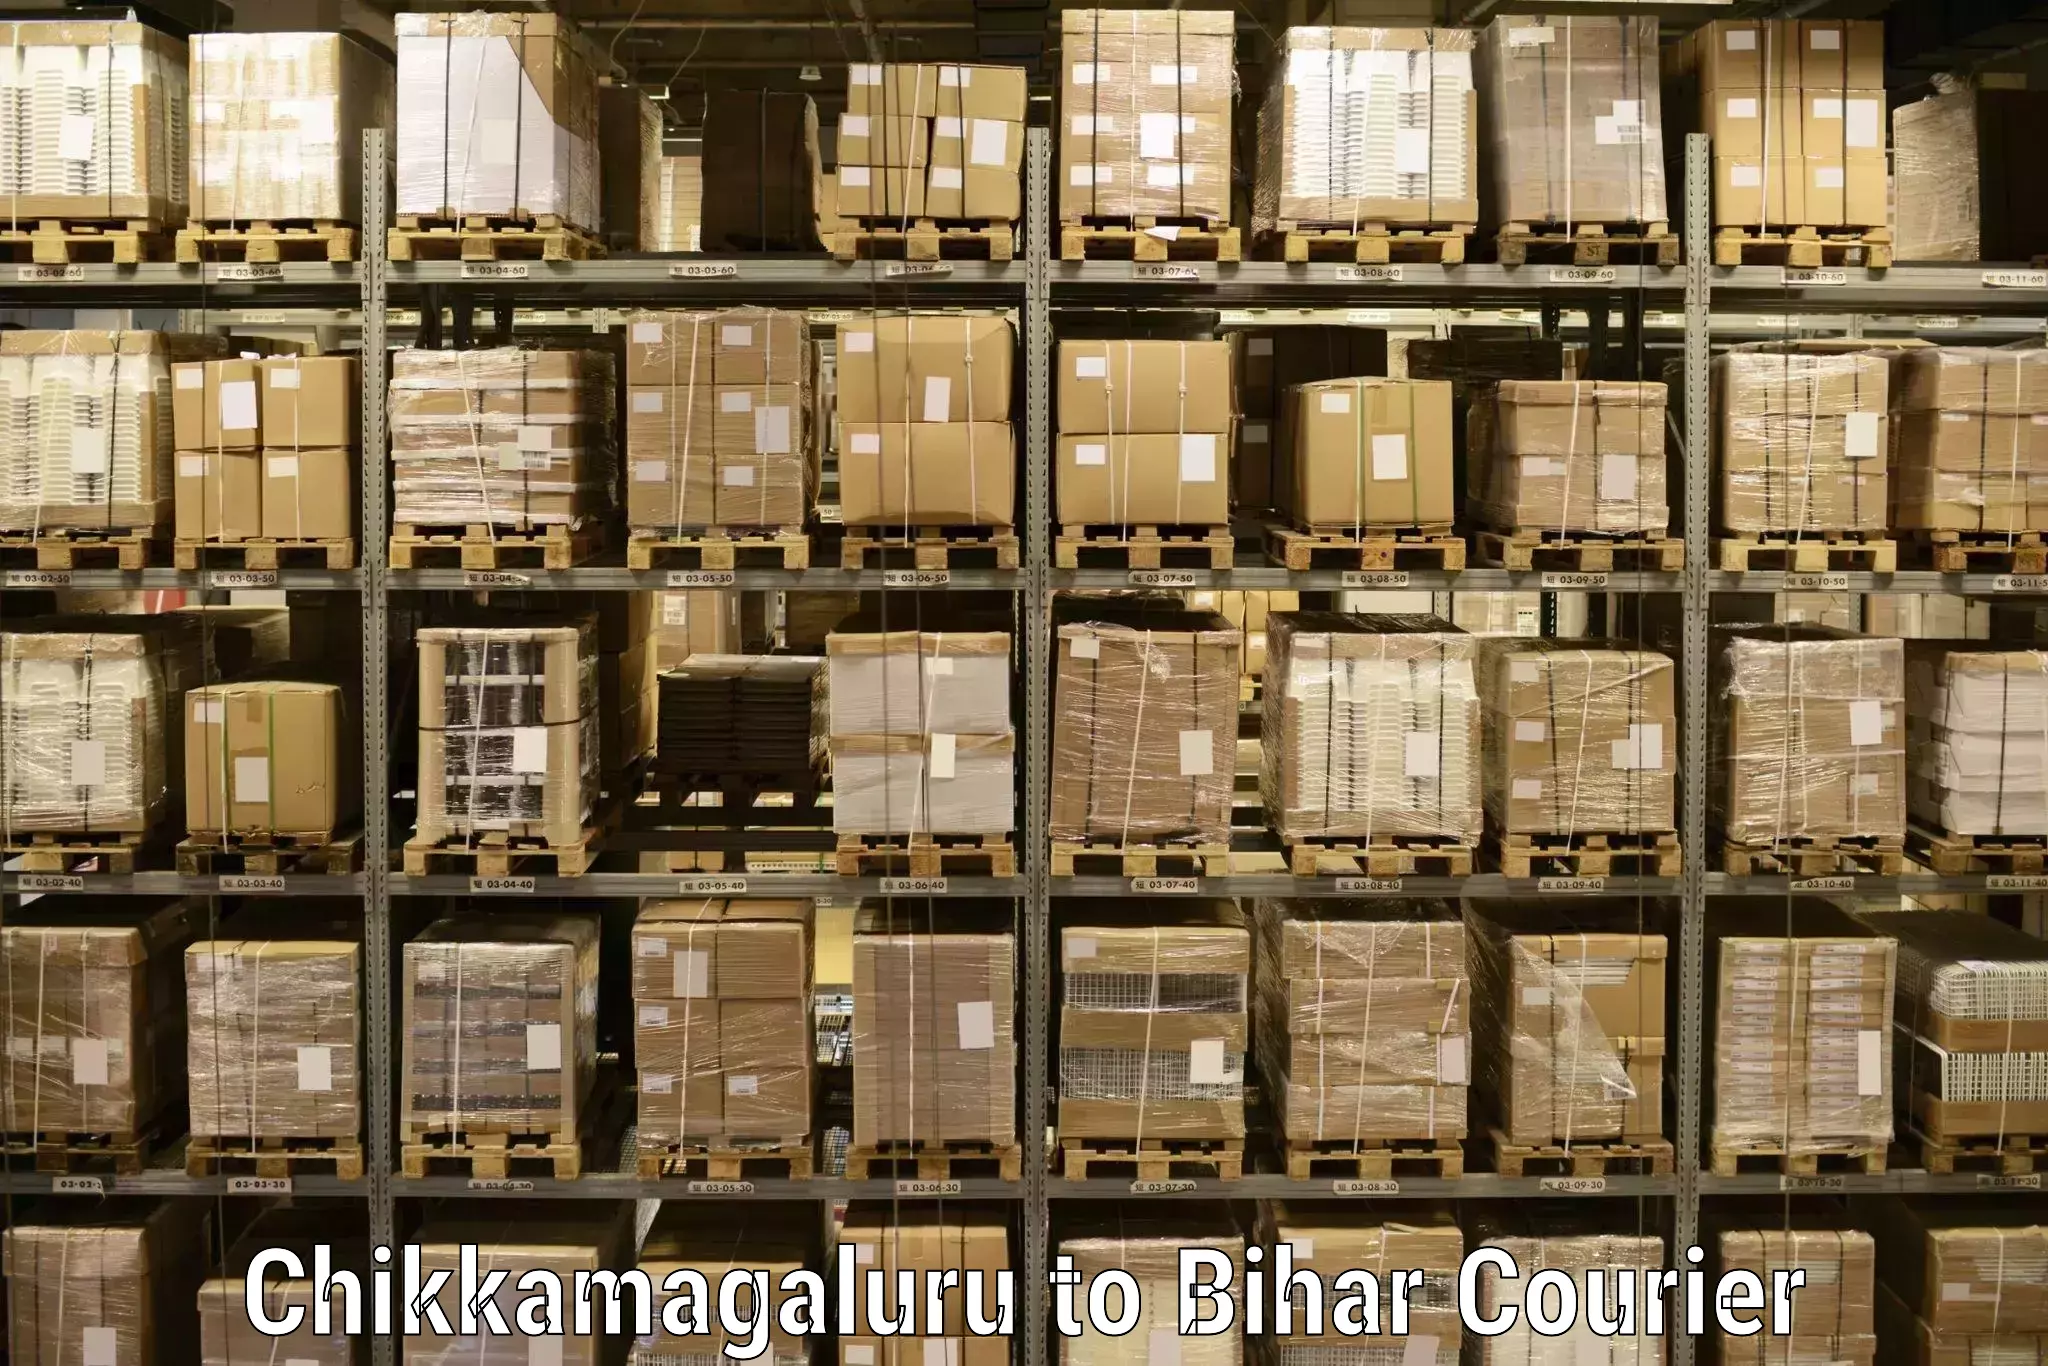 Global shipping networks Chikkamagaluru to Dinara